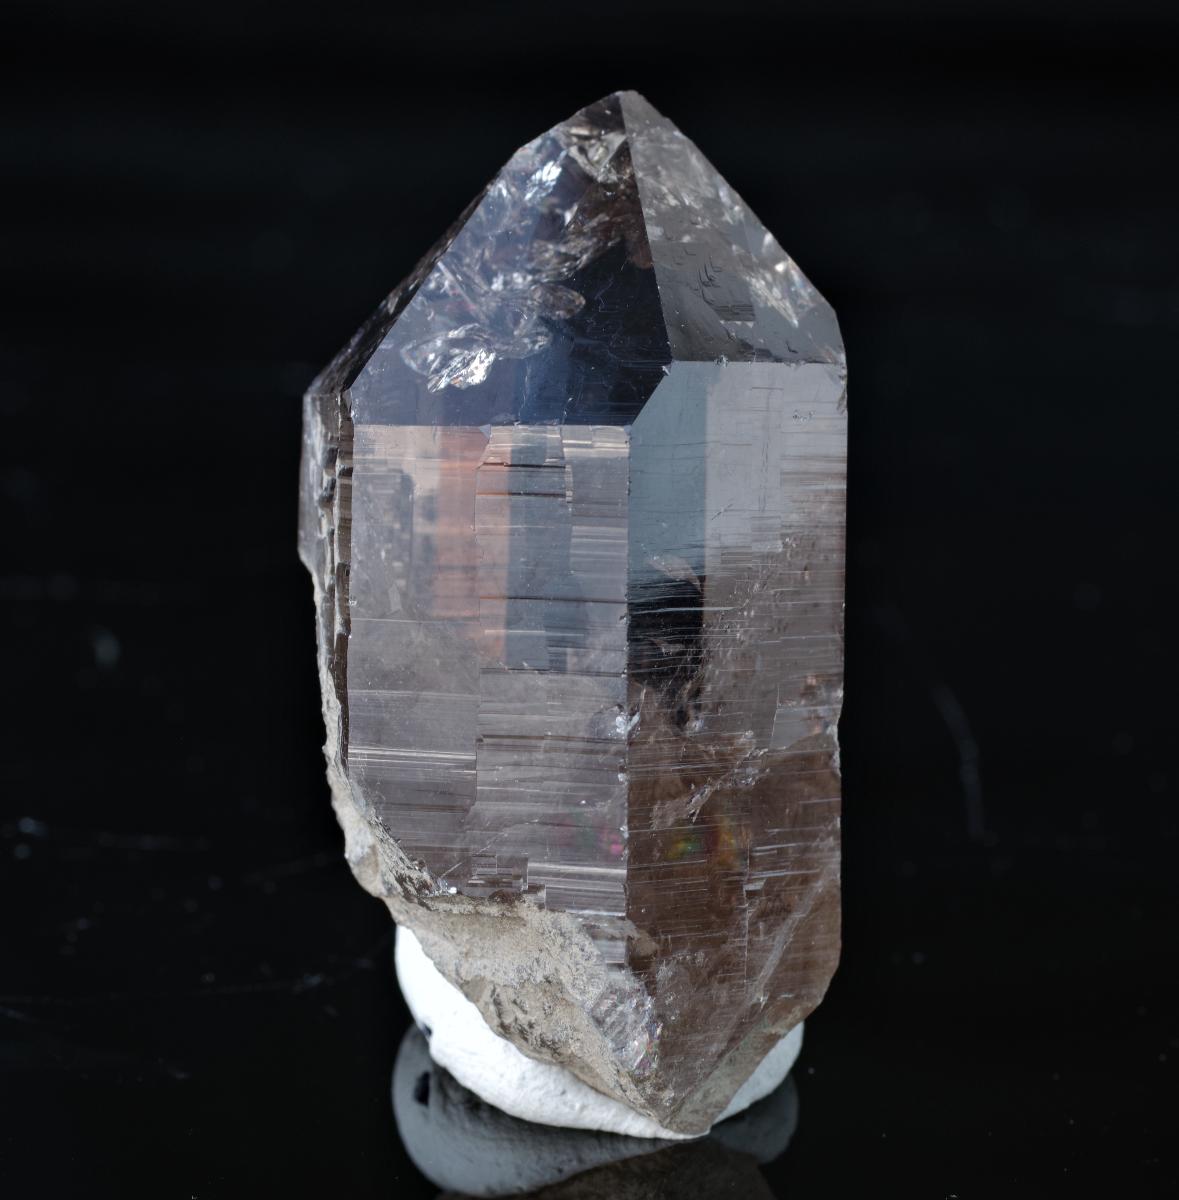 záhneda alpy 6,2 x 3,5 x 2,7 cm. pozrite ďalších cca 80 aukcií - Minerály a skameneliny